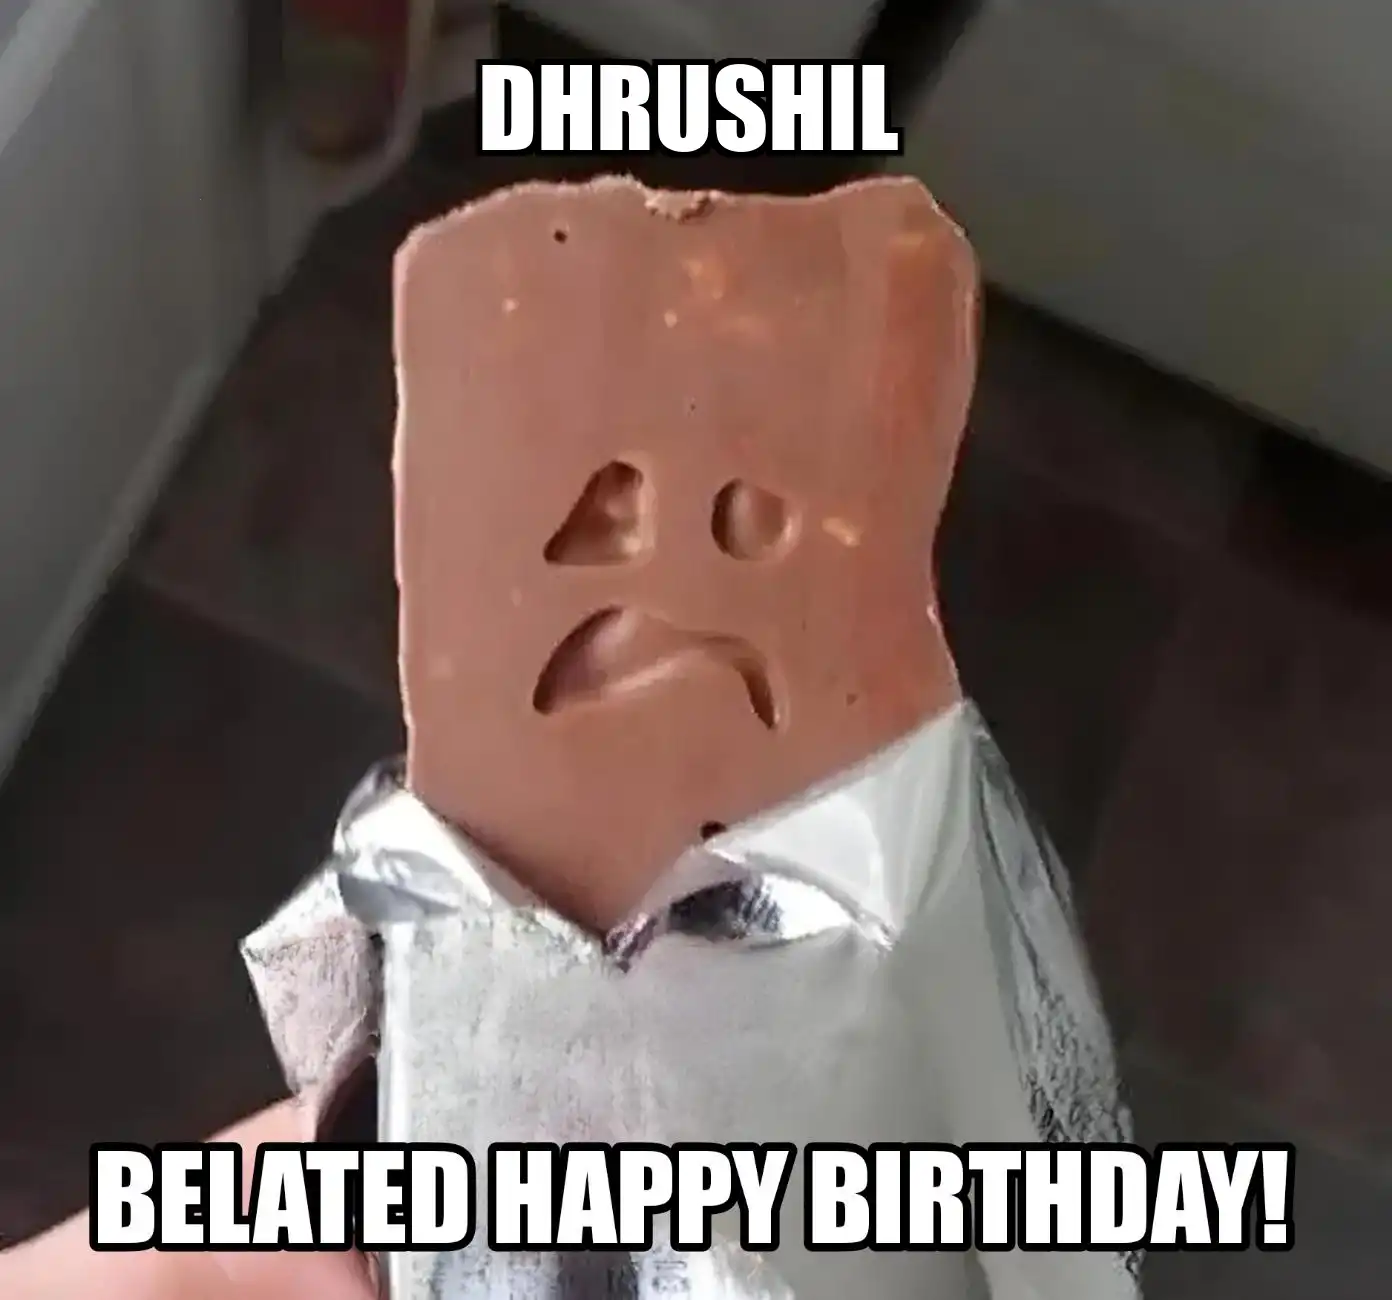 Happy Birthday Dhrushil Belated Happy Birthday Meme